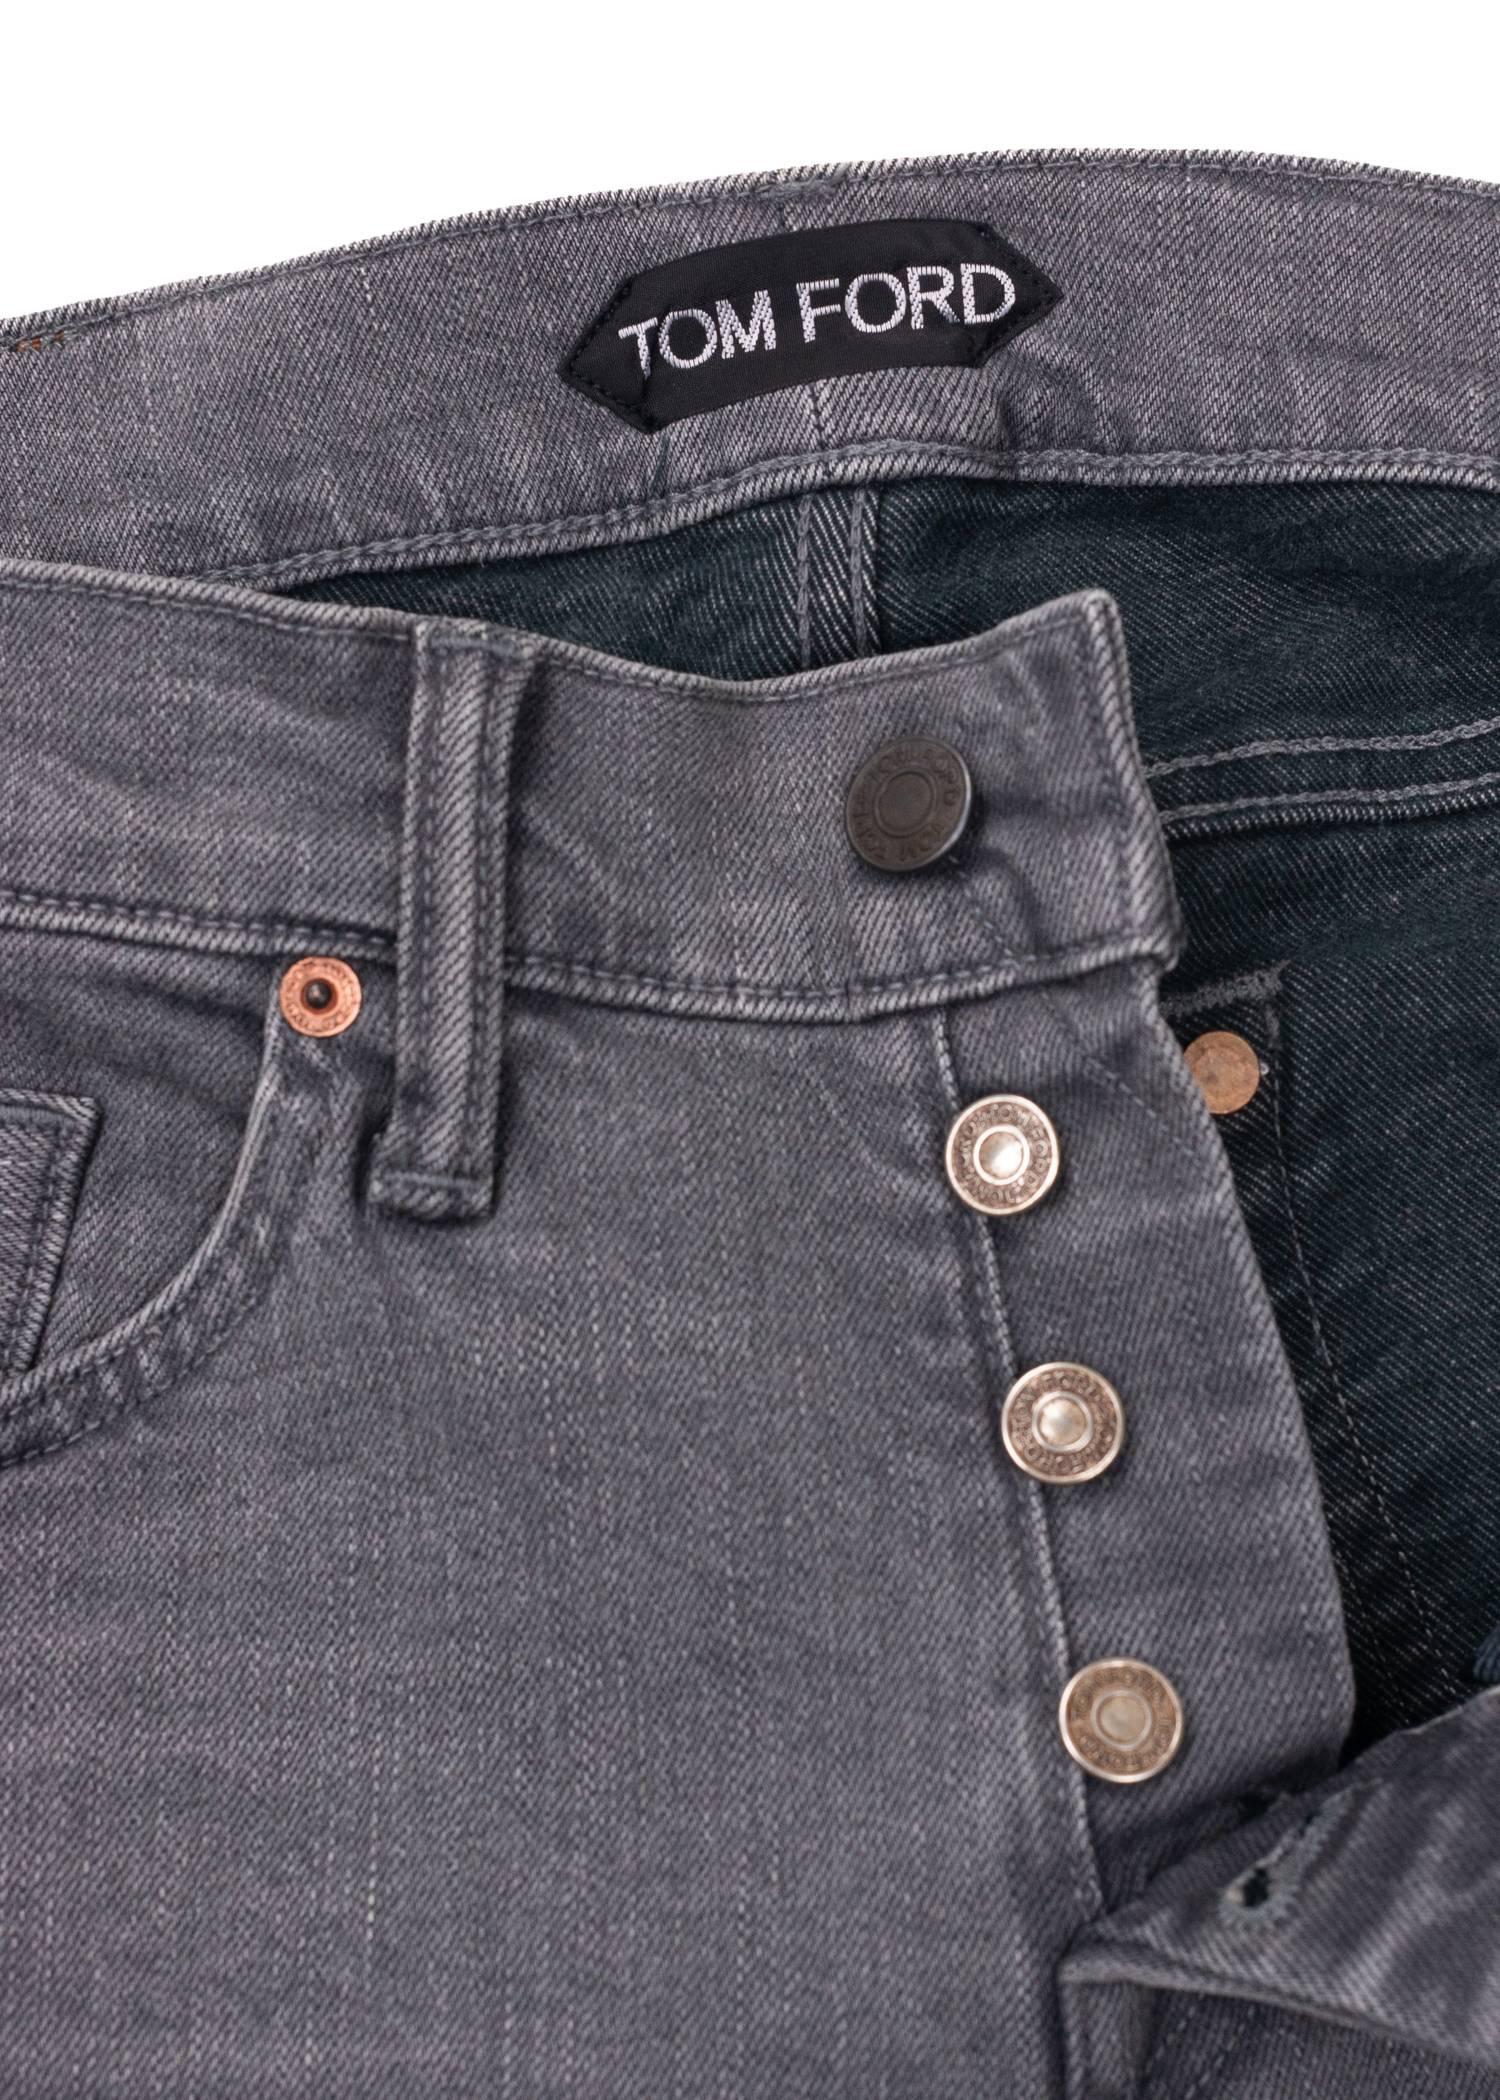 Gray Tom Ford Selvedge Denim Jeans Light Grey Wash Size 31 Regular Fit Model For Sale